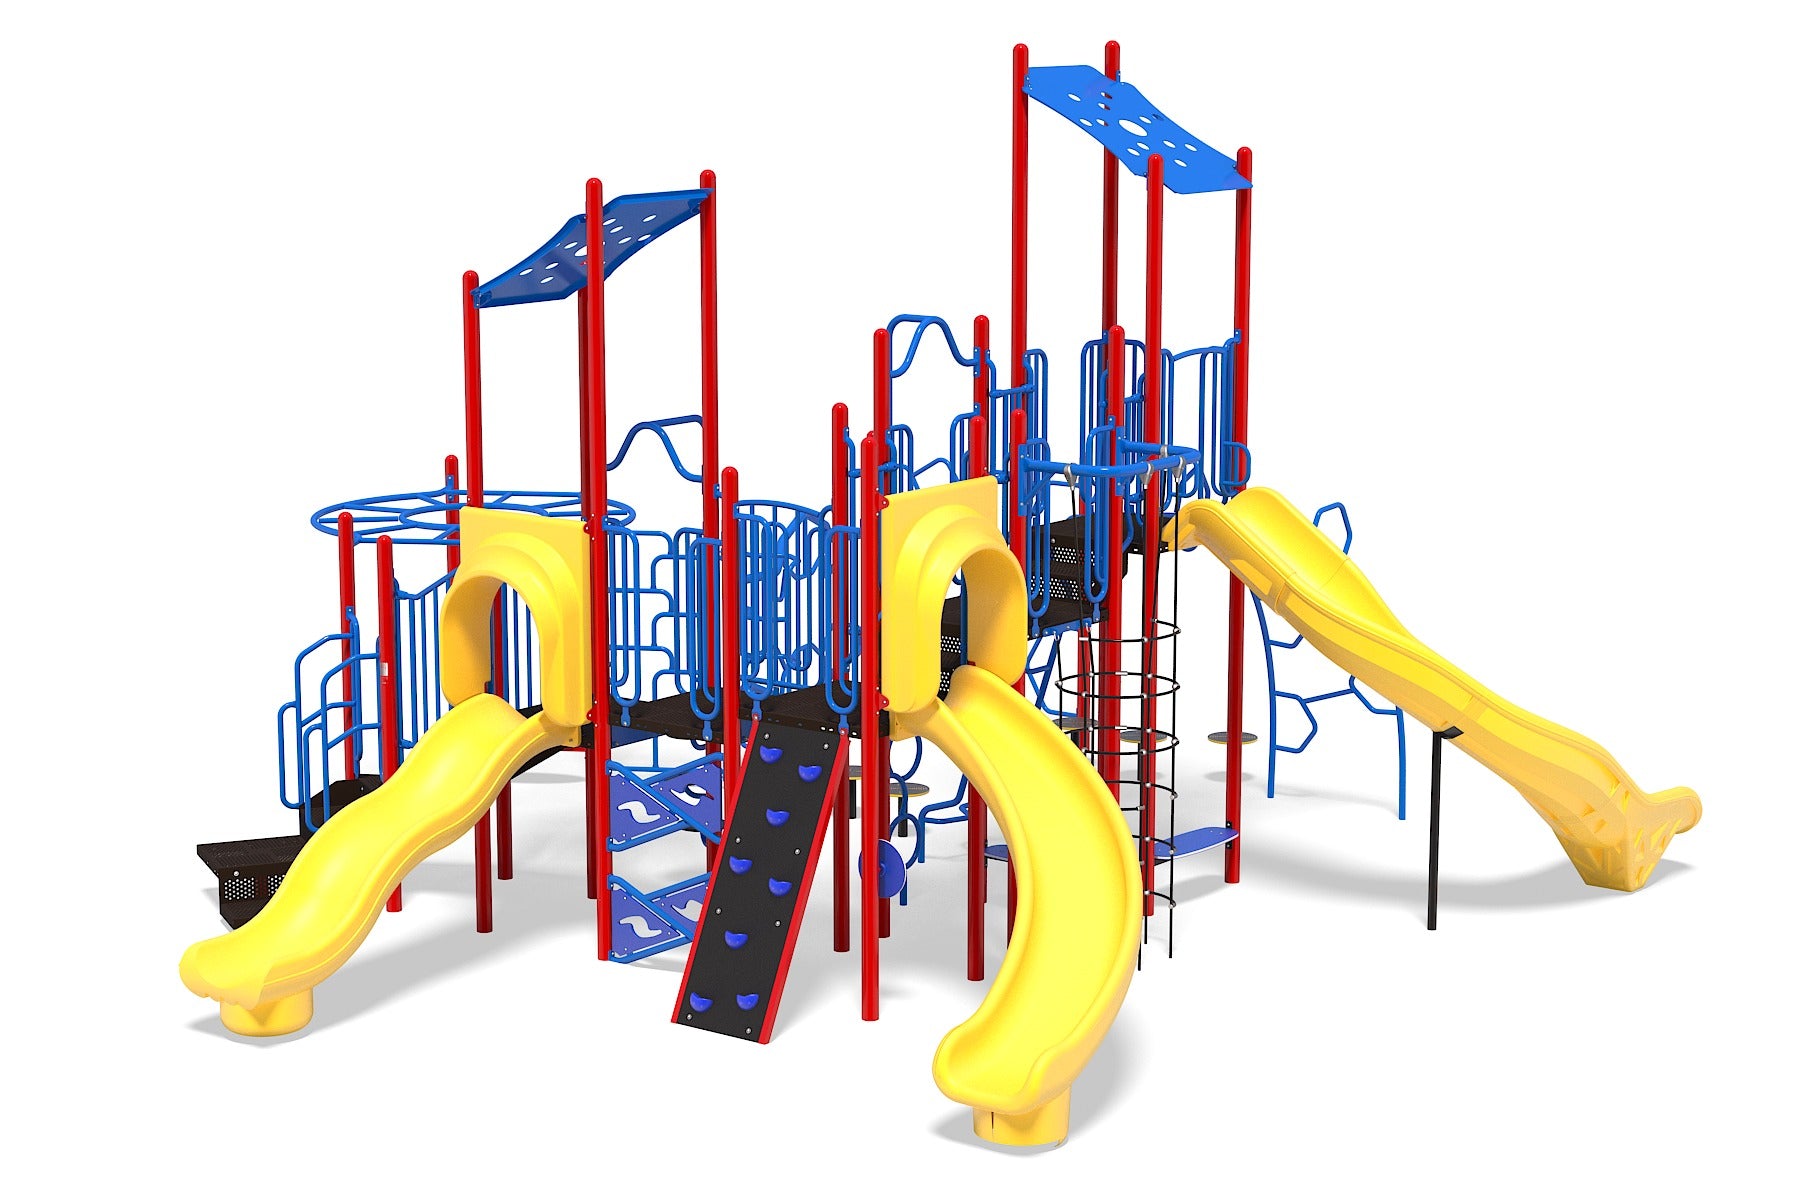 Extra Safe Kids Seesaw 360 Degree Playground Yard Metal Toys Game